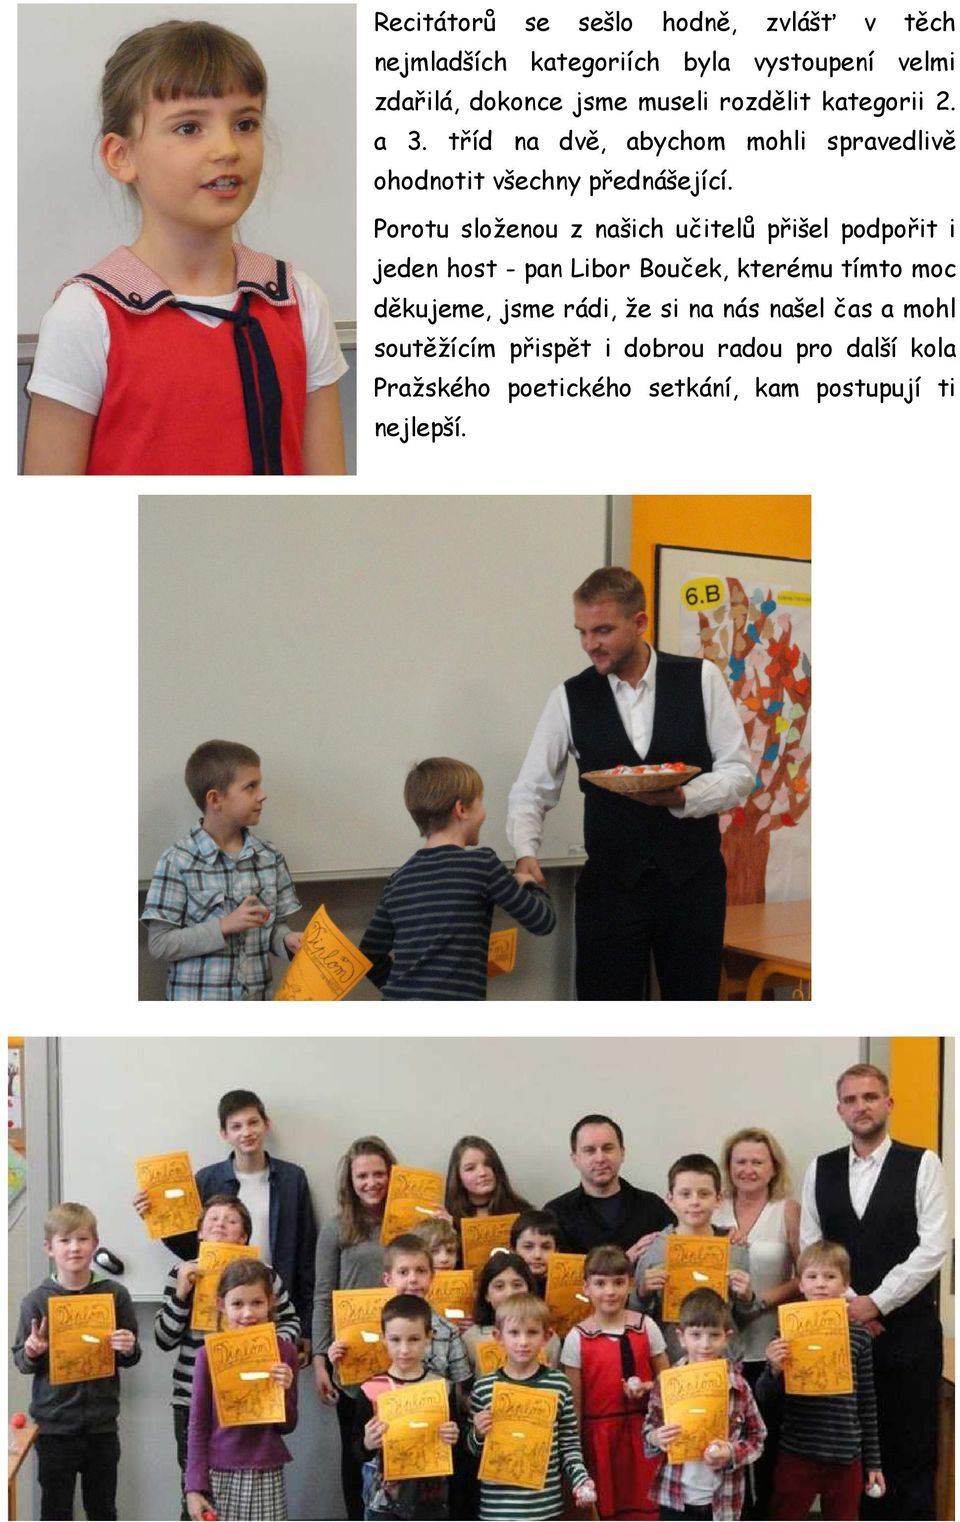 Porotu složenou z našich učitelů přišel podpořit i jeden host - pan Libor Bouček, kterému tímto moc děkujeme, jsme